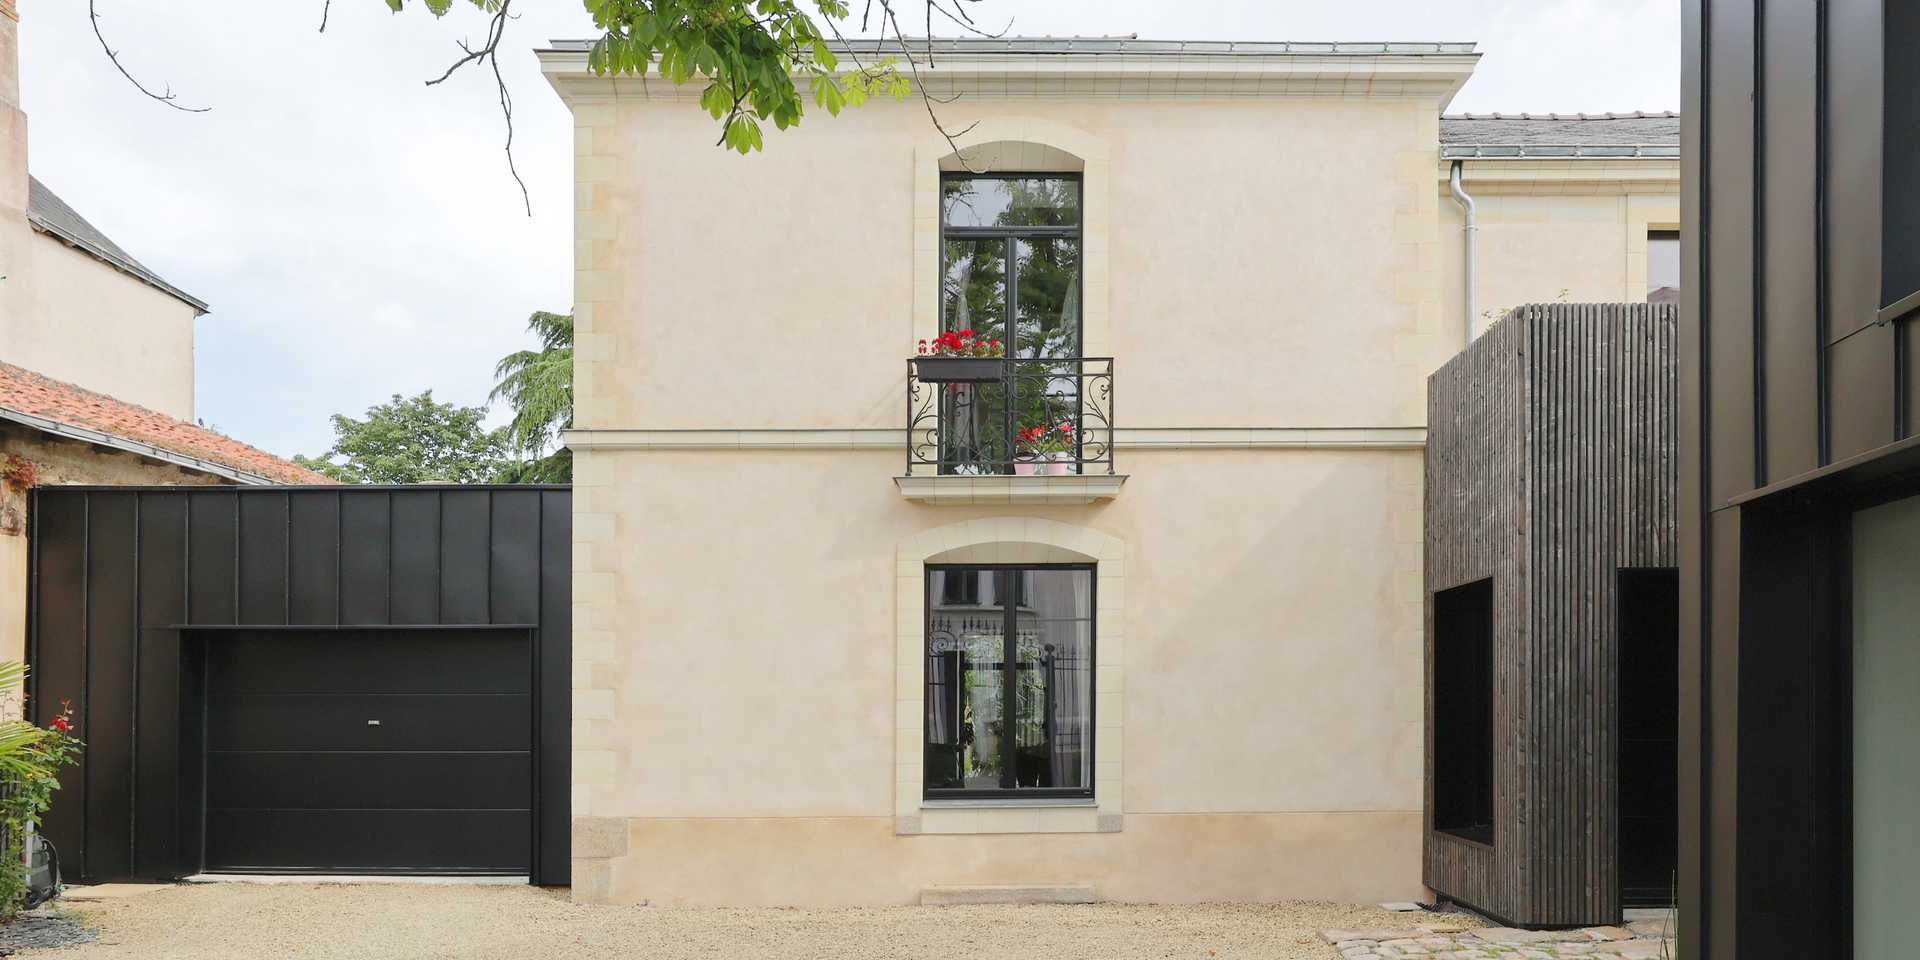 Maison contemporaine esprit loft réalisée par un architecte à Montpellier